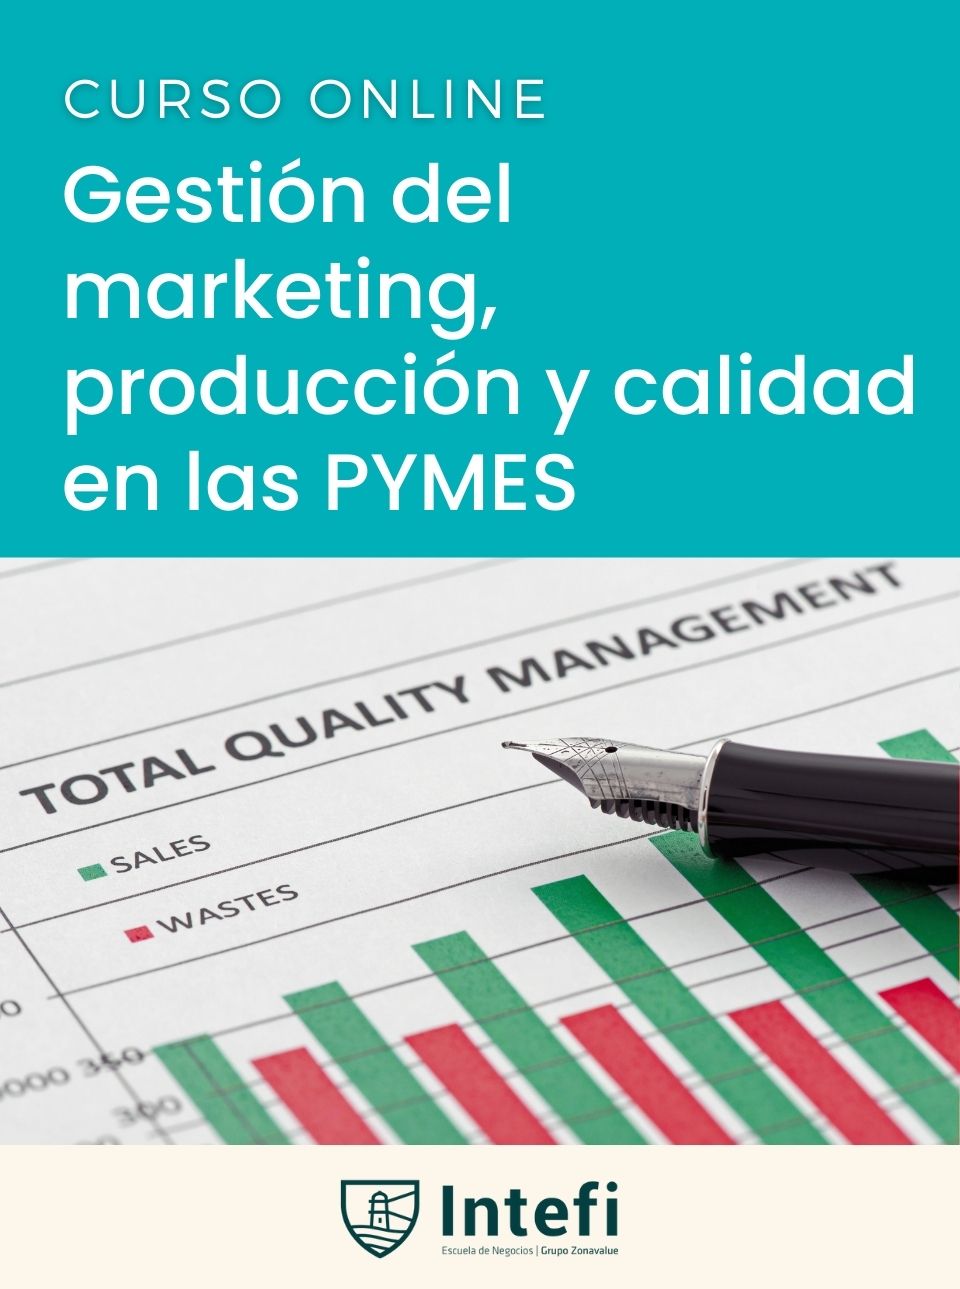 Curso de la gestión del marketing, producción y calidad en las PYMES Intefi